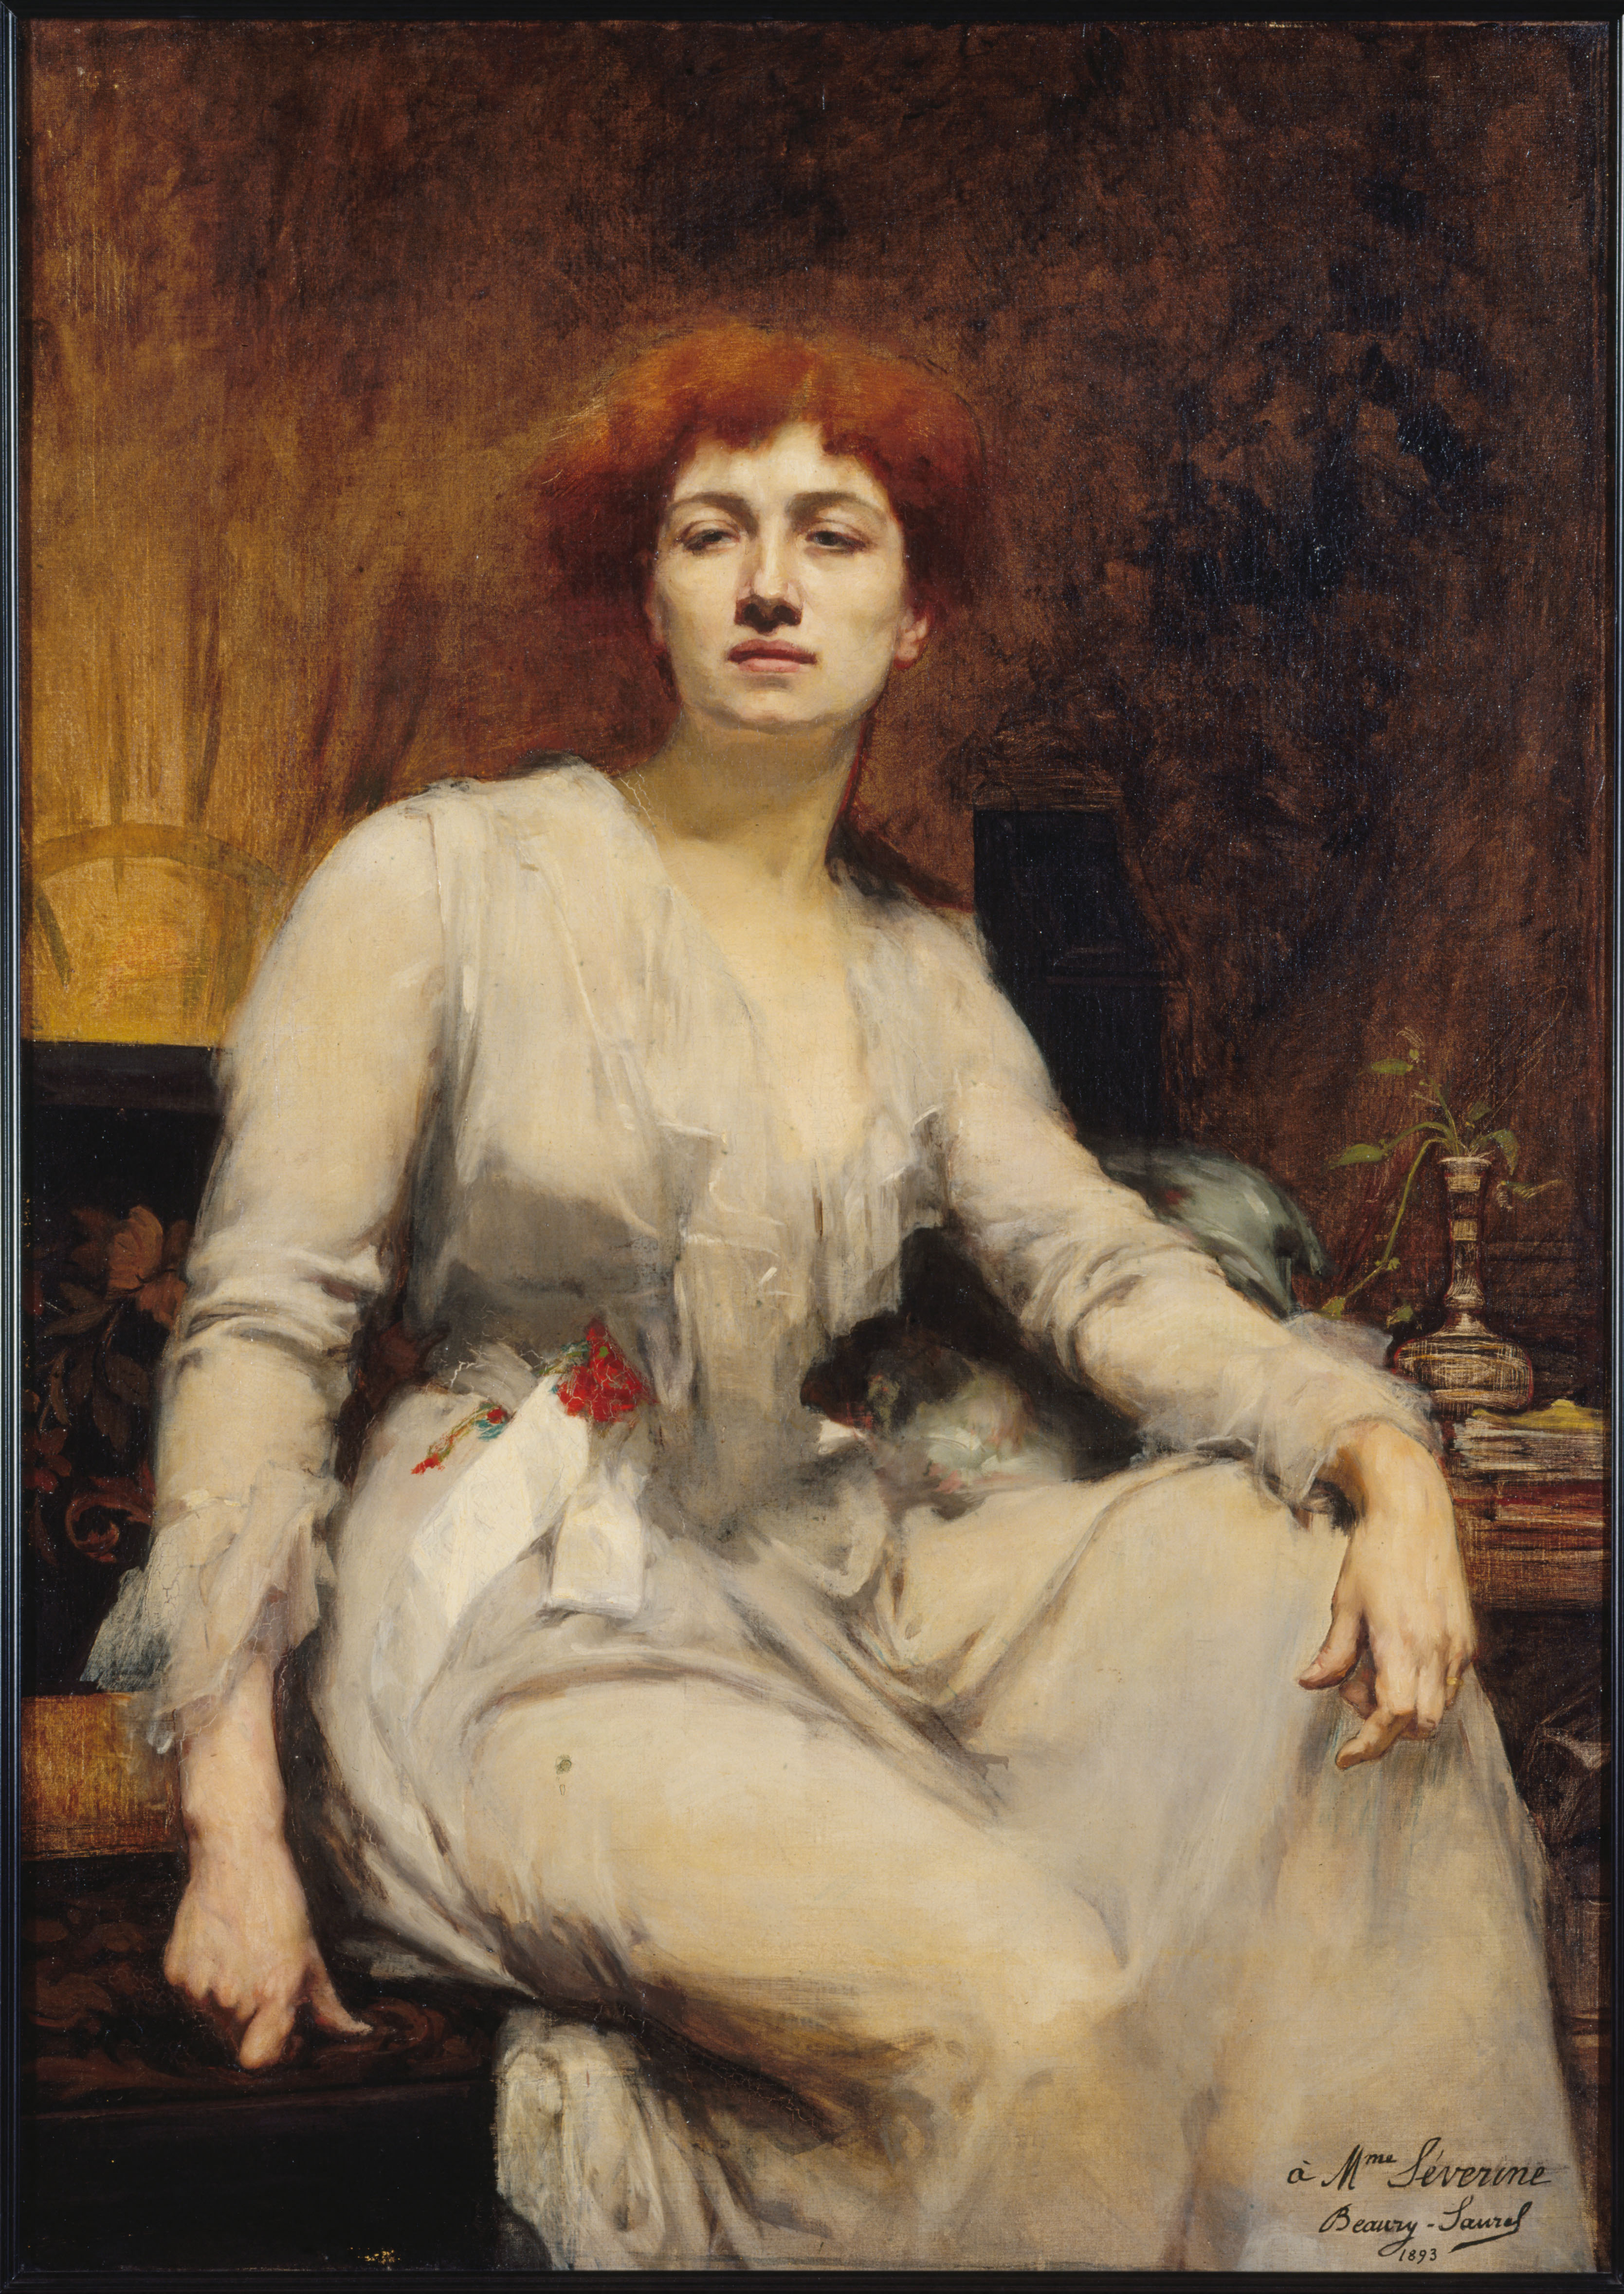 Séverine by Amélie Beaury-Saurel - 1893 